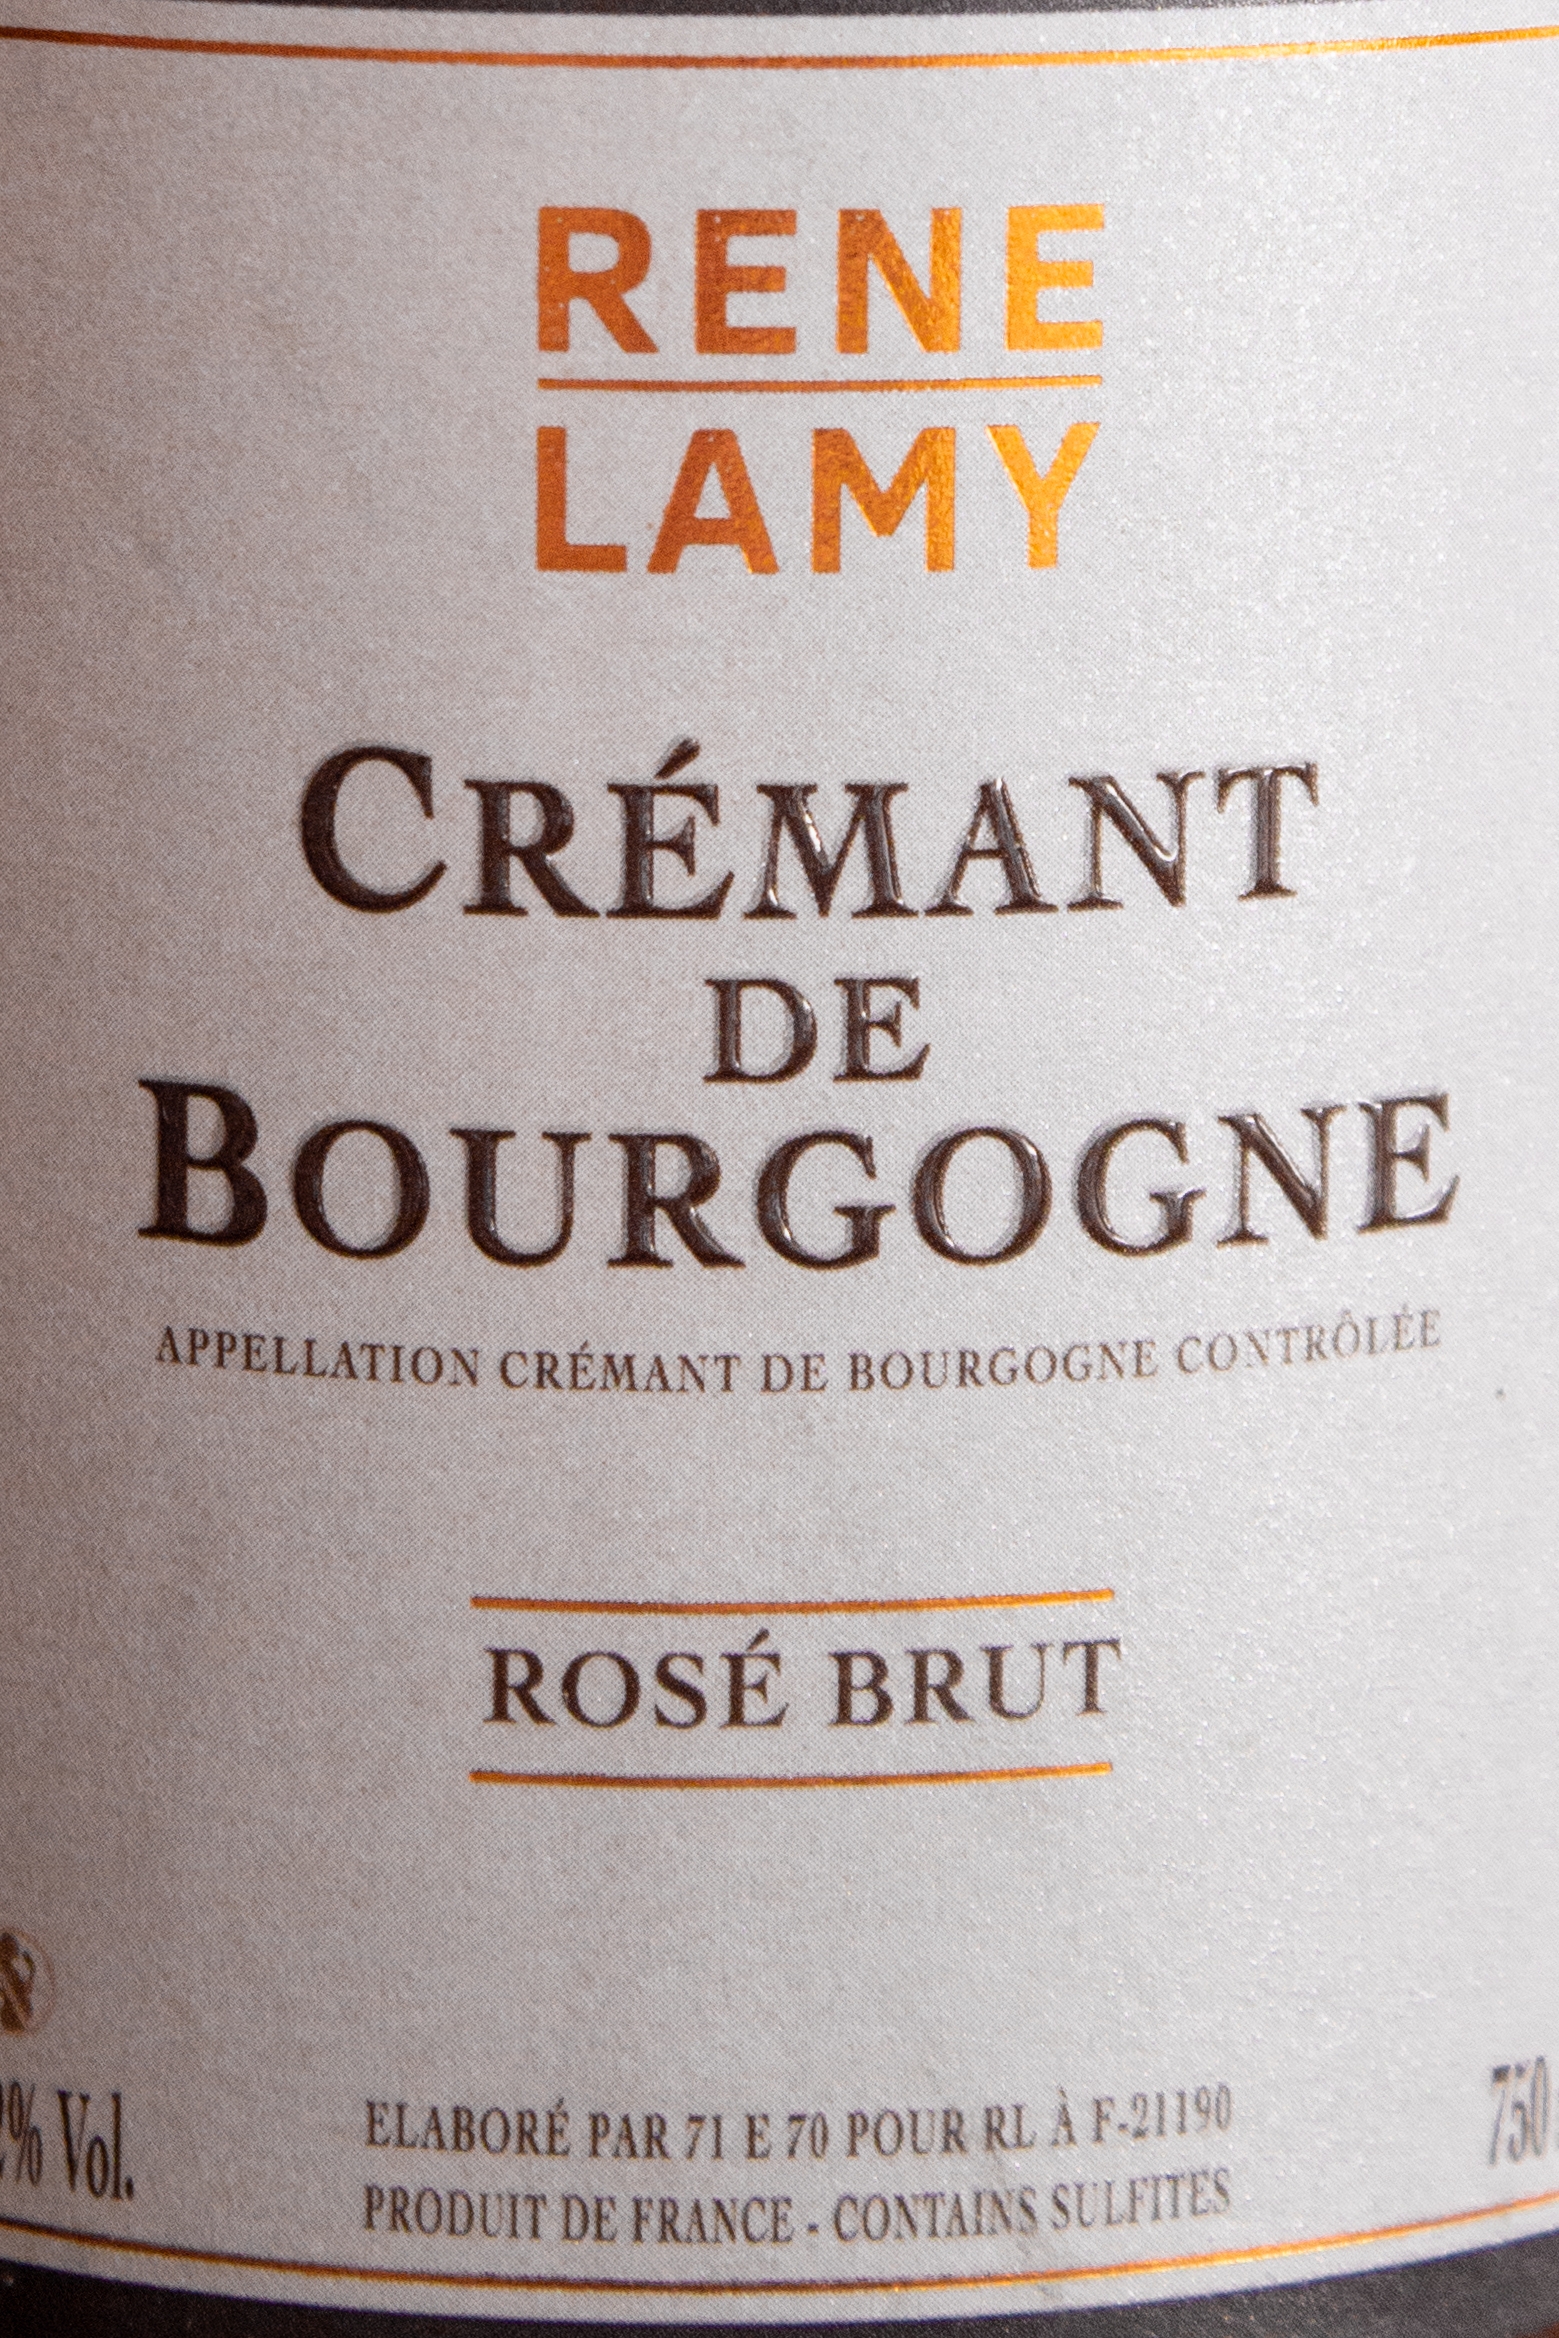 Игристое вино Rene Lamy Cremant de Bourgogne Rose Brut / Рене Лами Креман де Бургонь Розе Брют